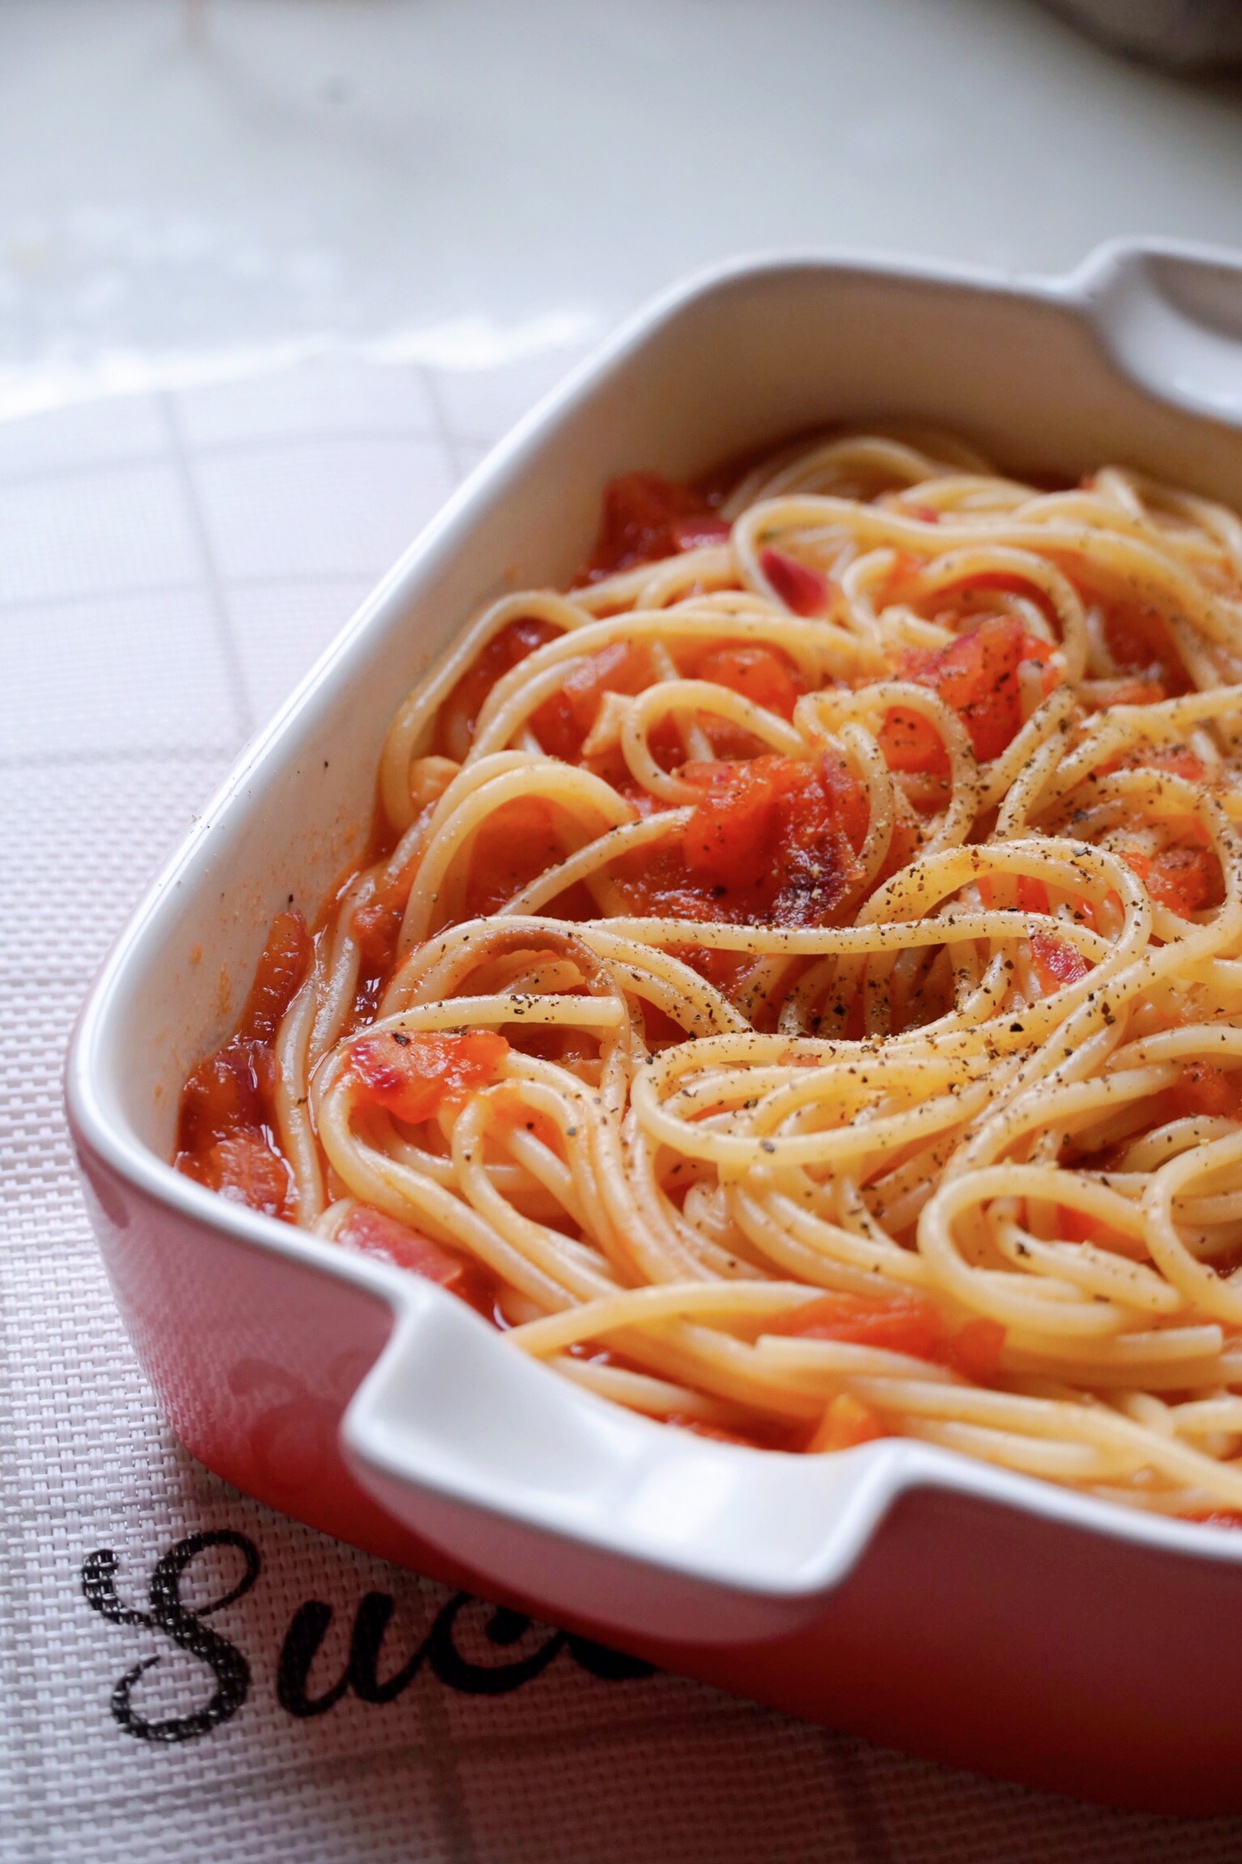 超好吃的㊙️制意大利面番茄意面 简单易上手 媲美必胜客的做法